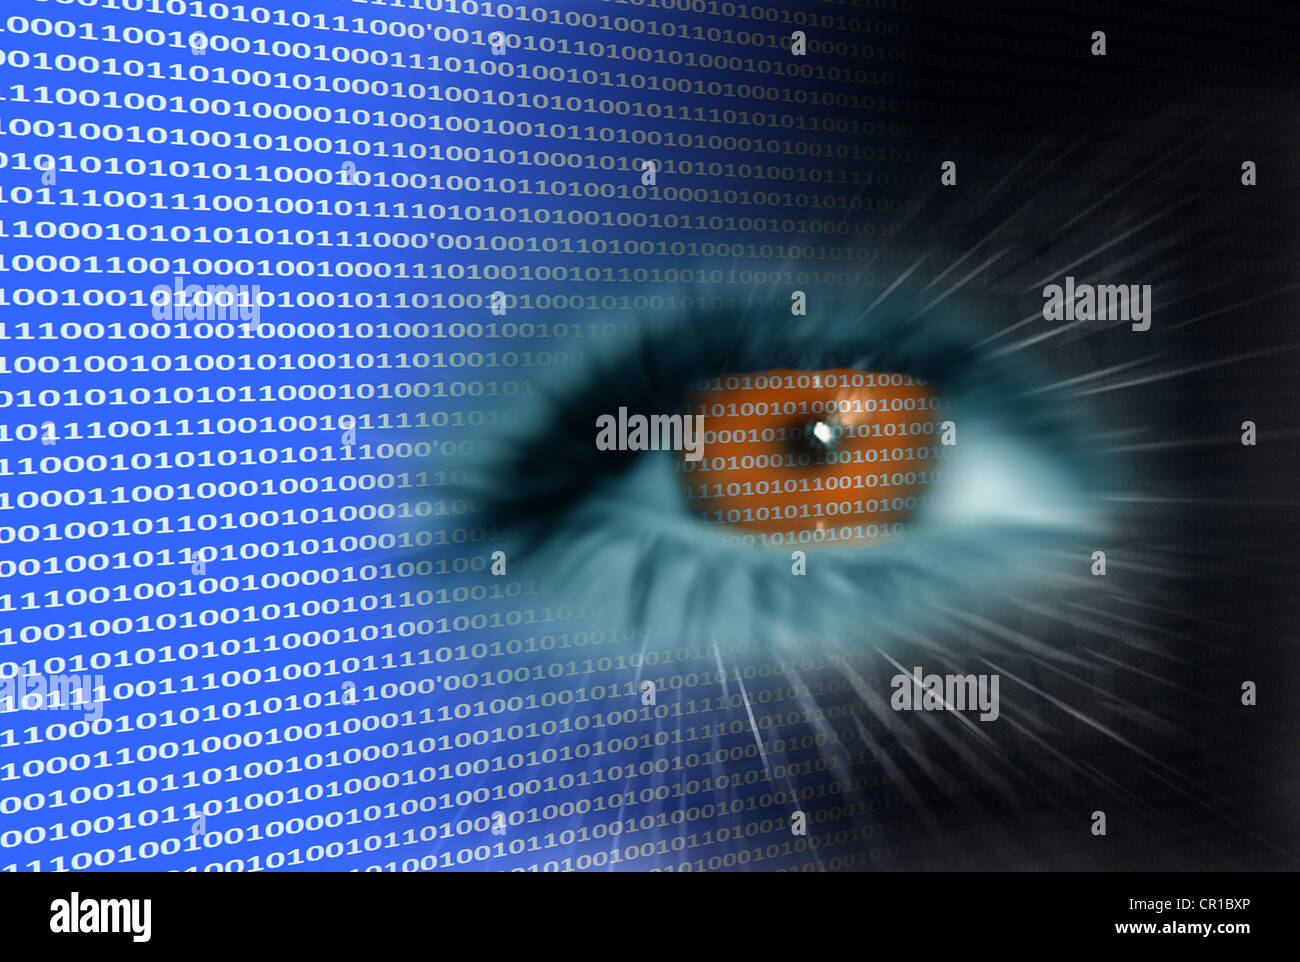 Multimedia eye, symbolic image for data stream analysis Stock Photo